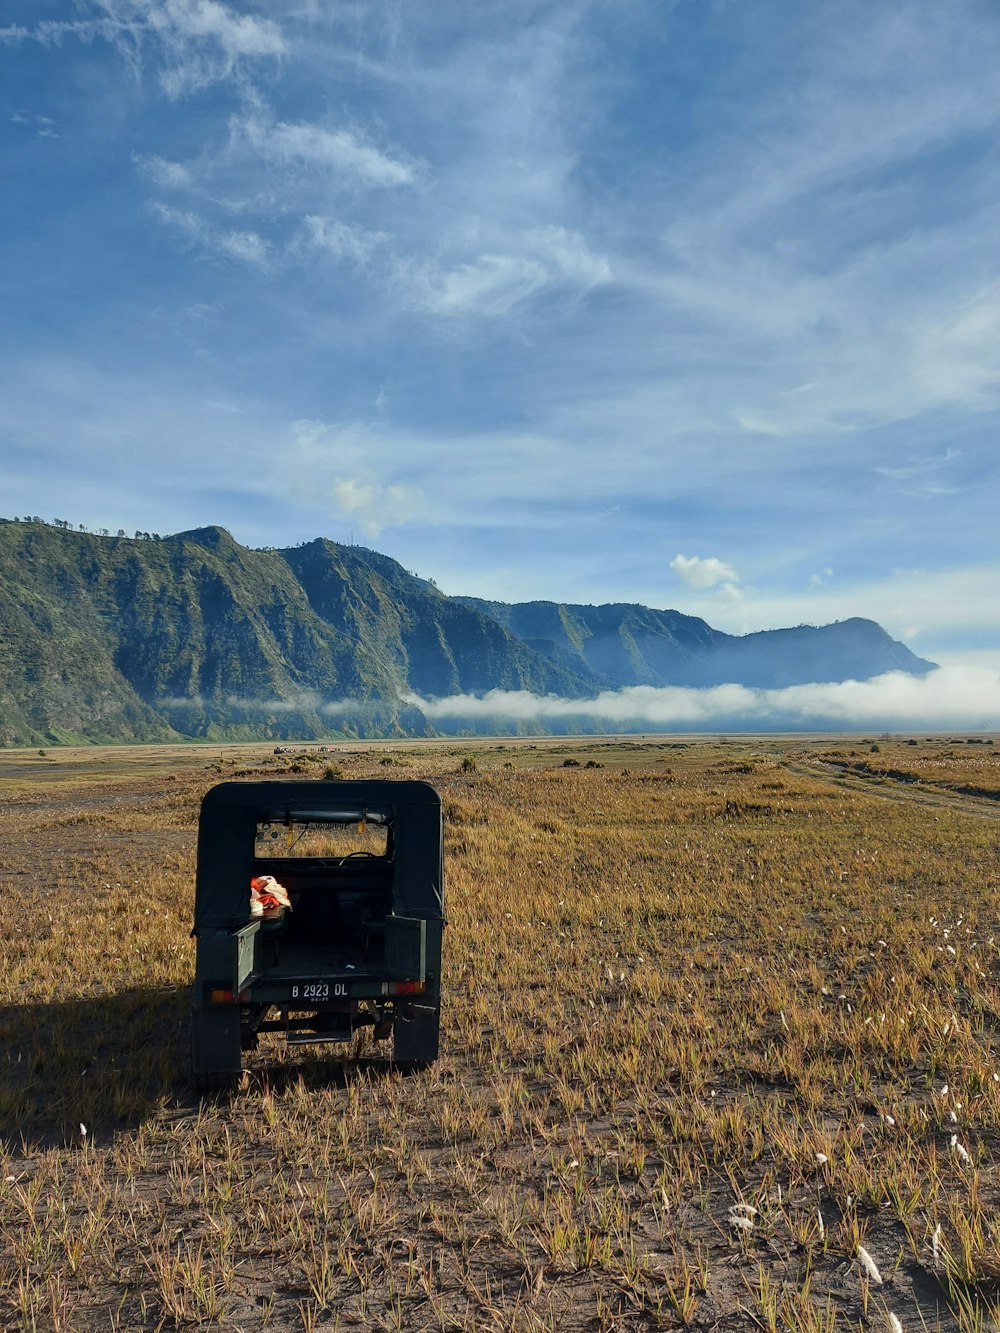 un camion in un campo con montagne sullo sfondo